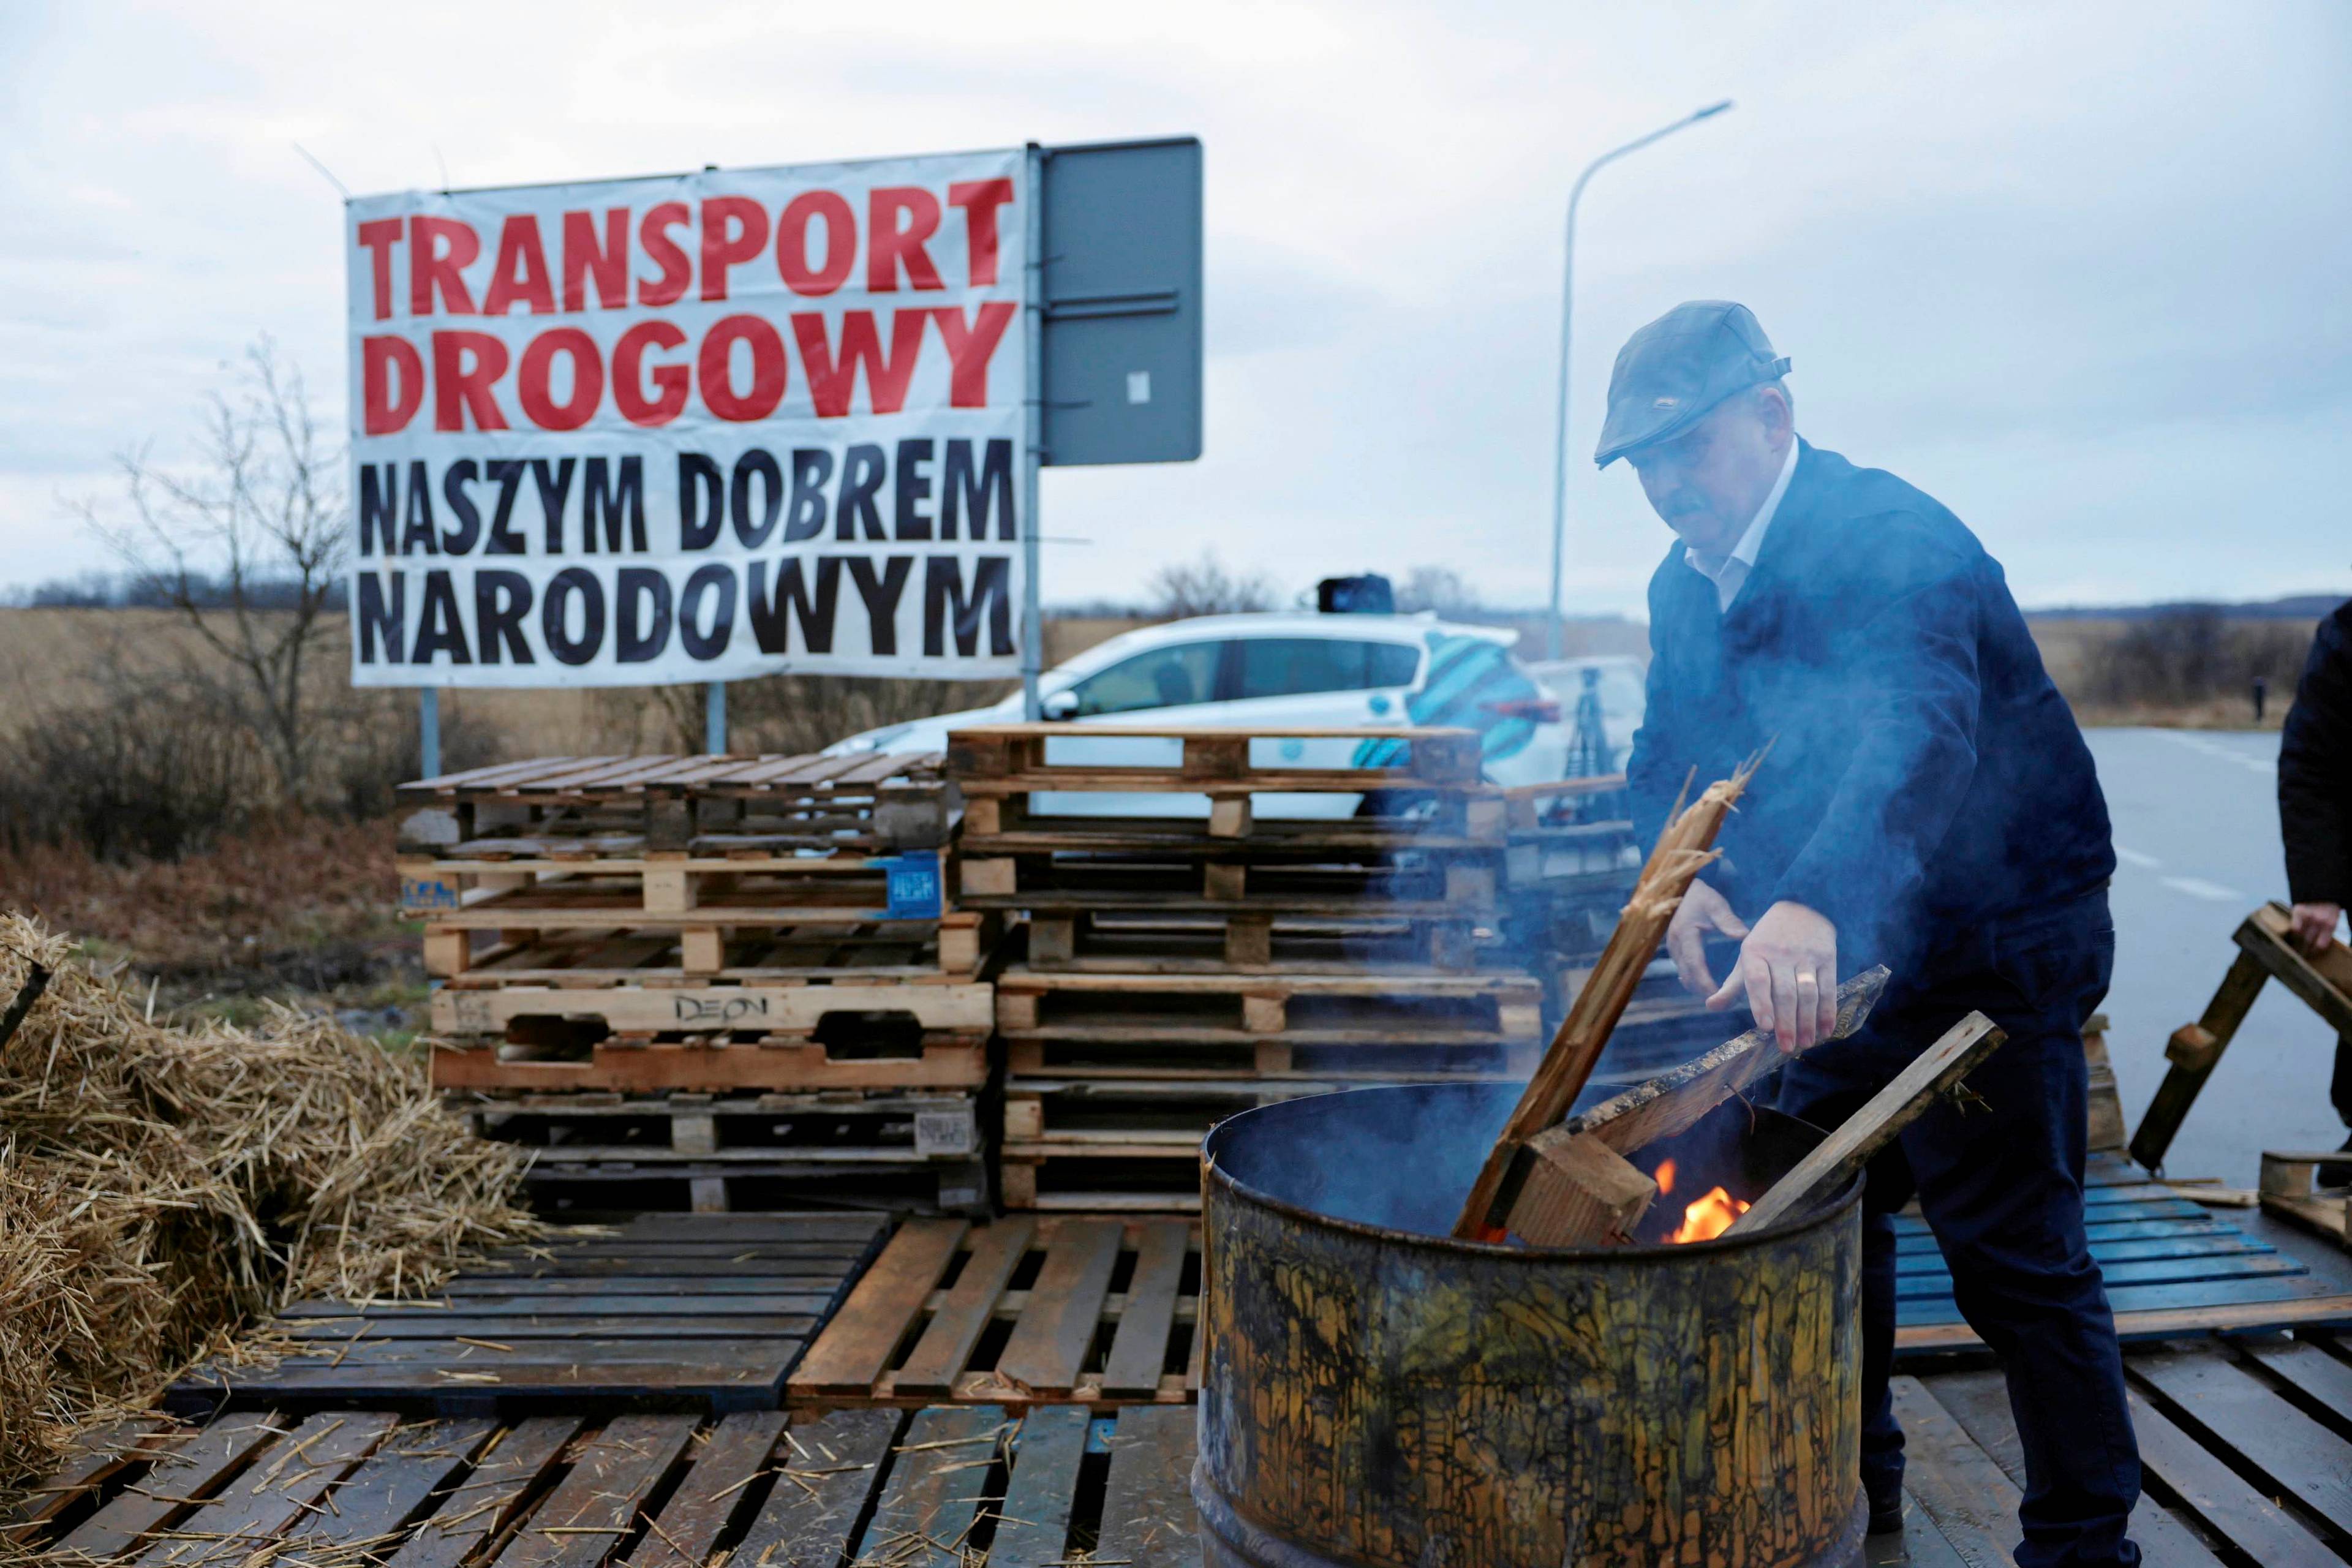 Protest rolników na granicy, mężczyzna wrzuca deski do metalowego kosza, w którym płonie ogień. w tle transparent z hasłem „Transport drogowy naszym dobrem narodowym”